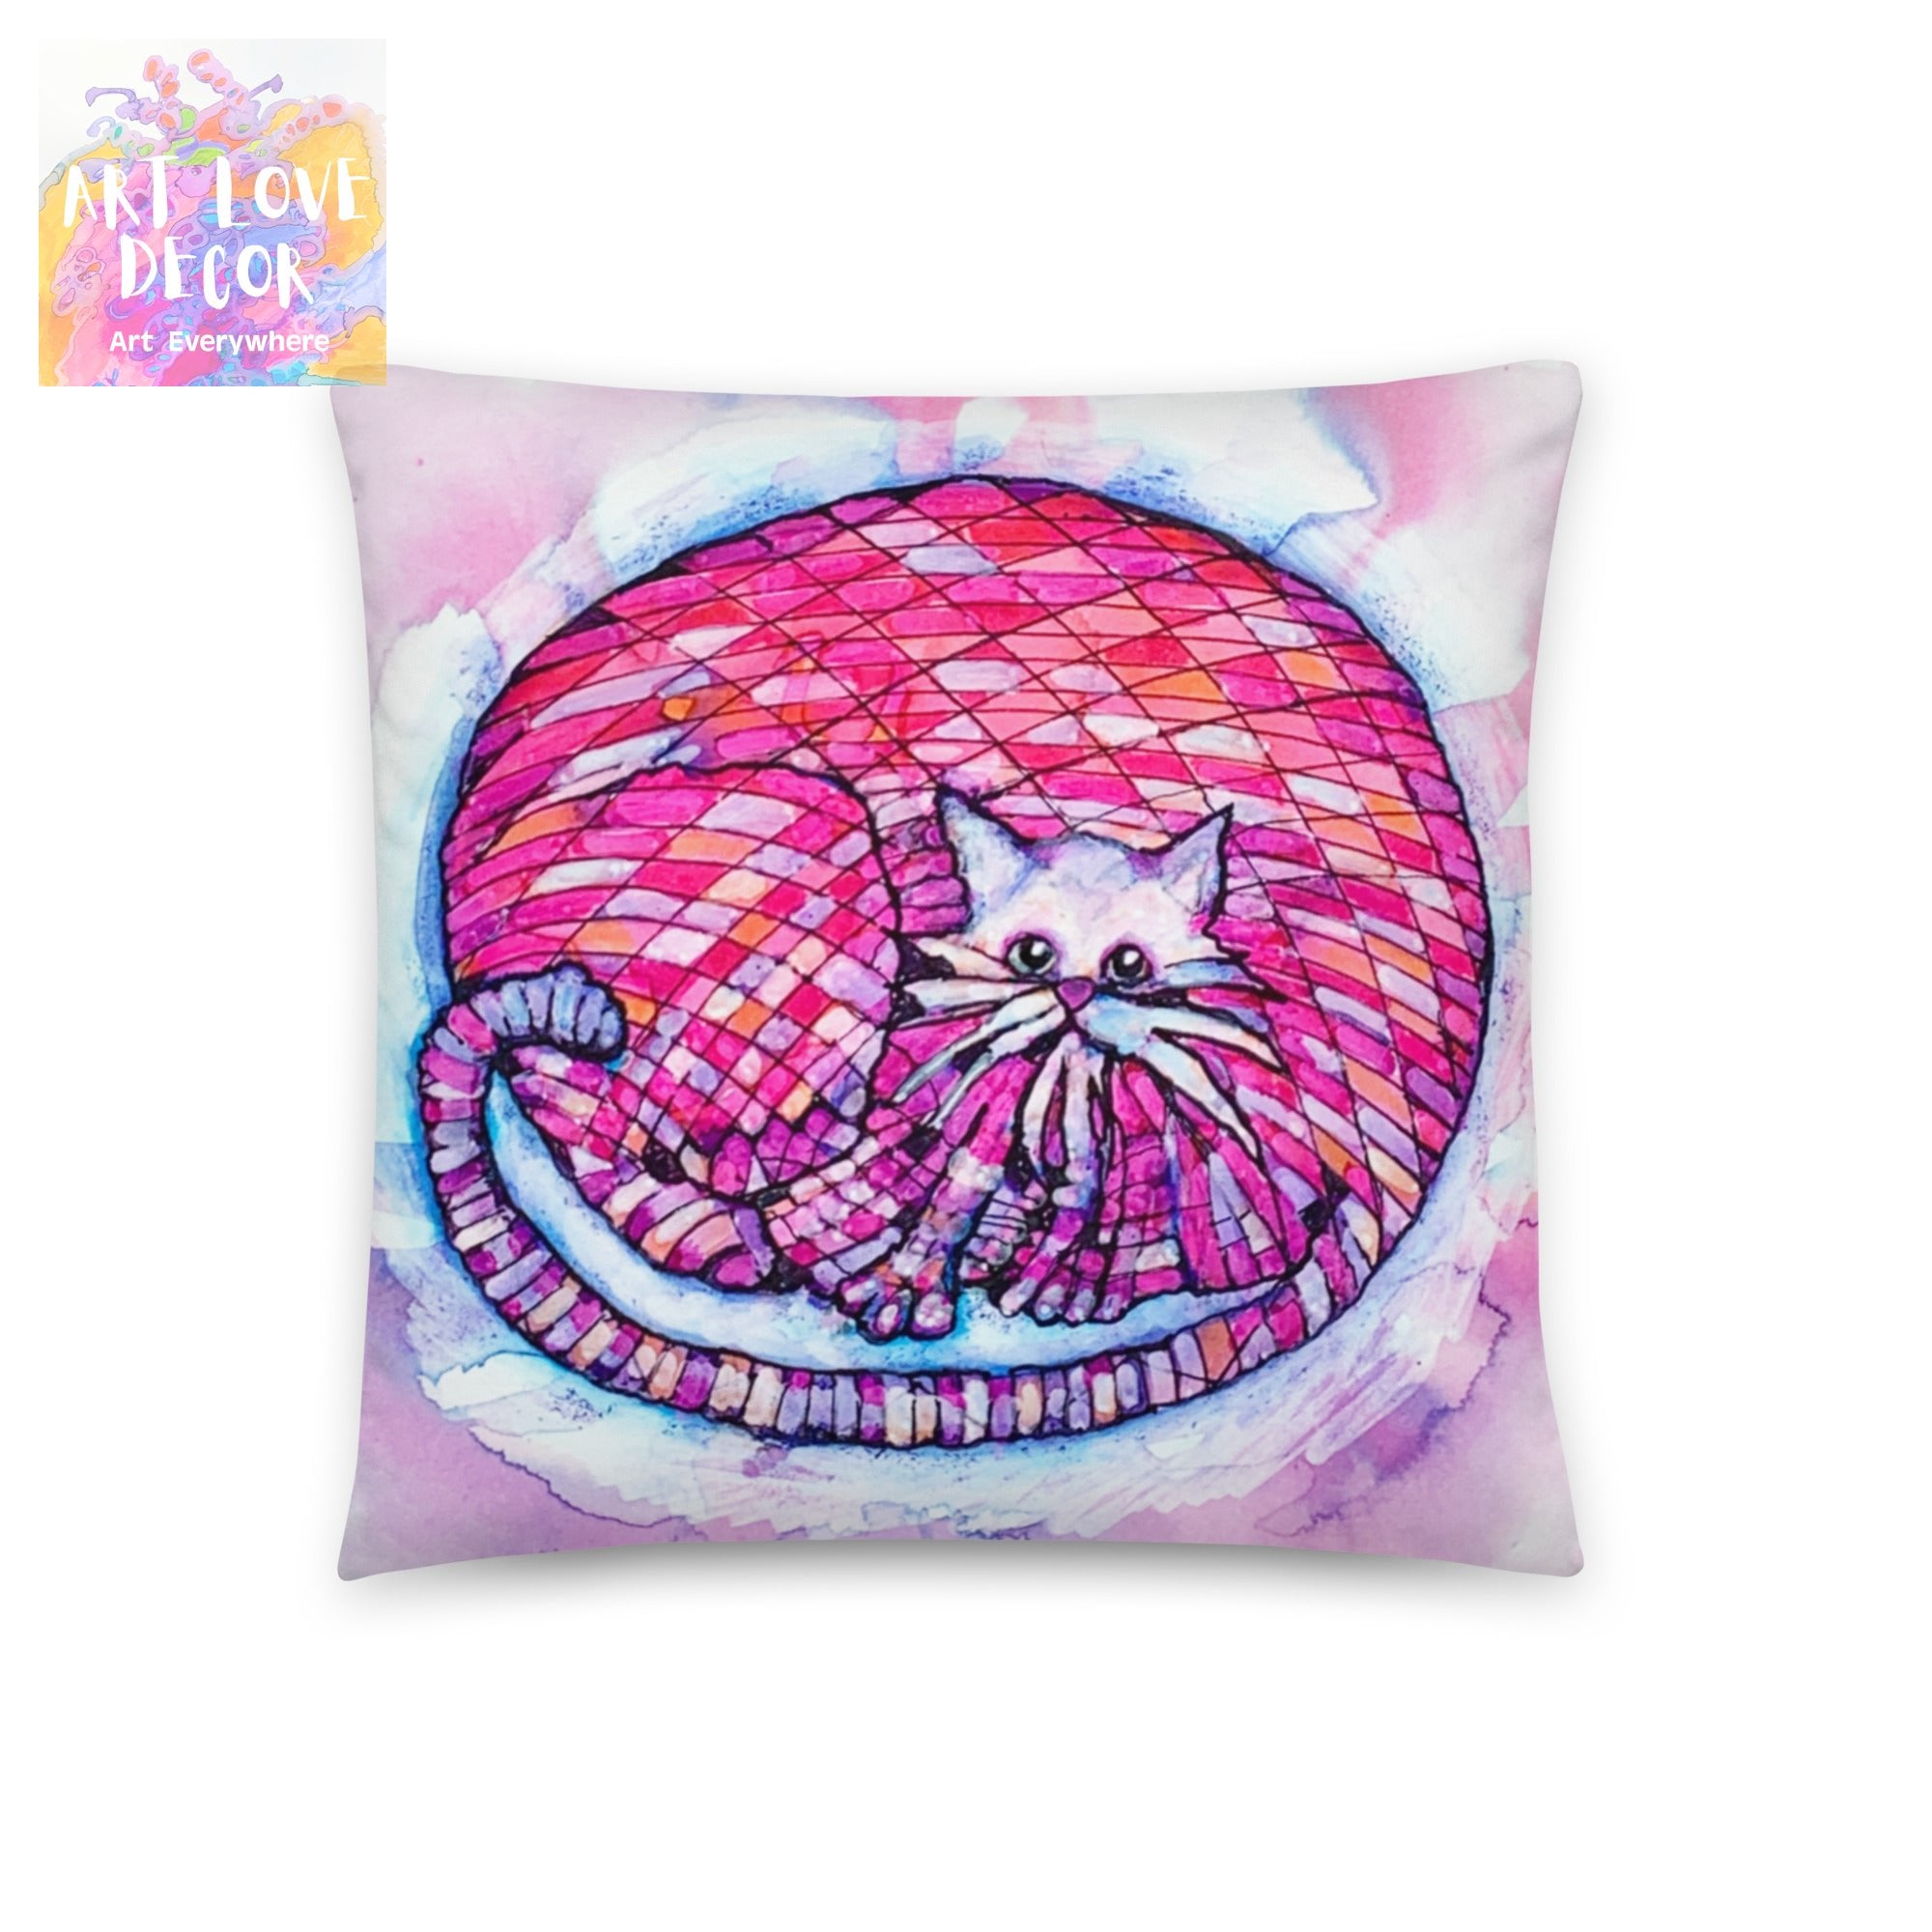 Big Pink Cat Pillow - Art Love Decor